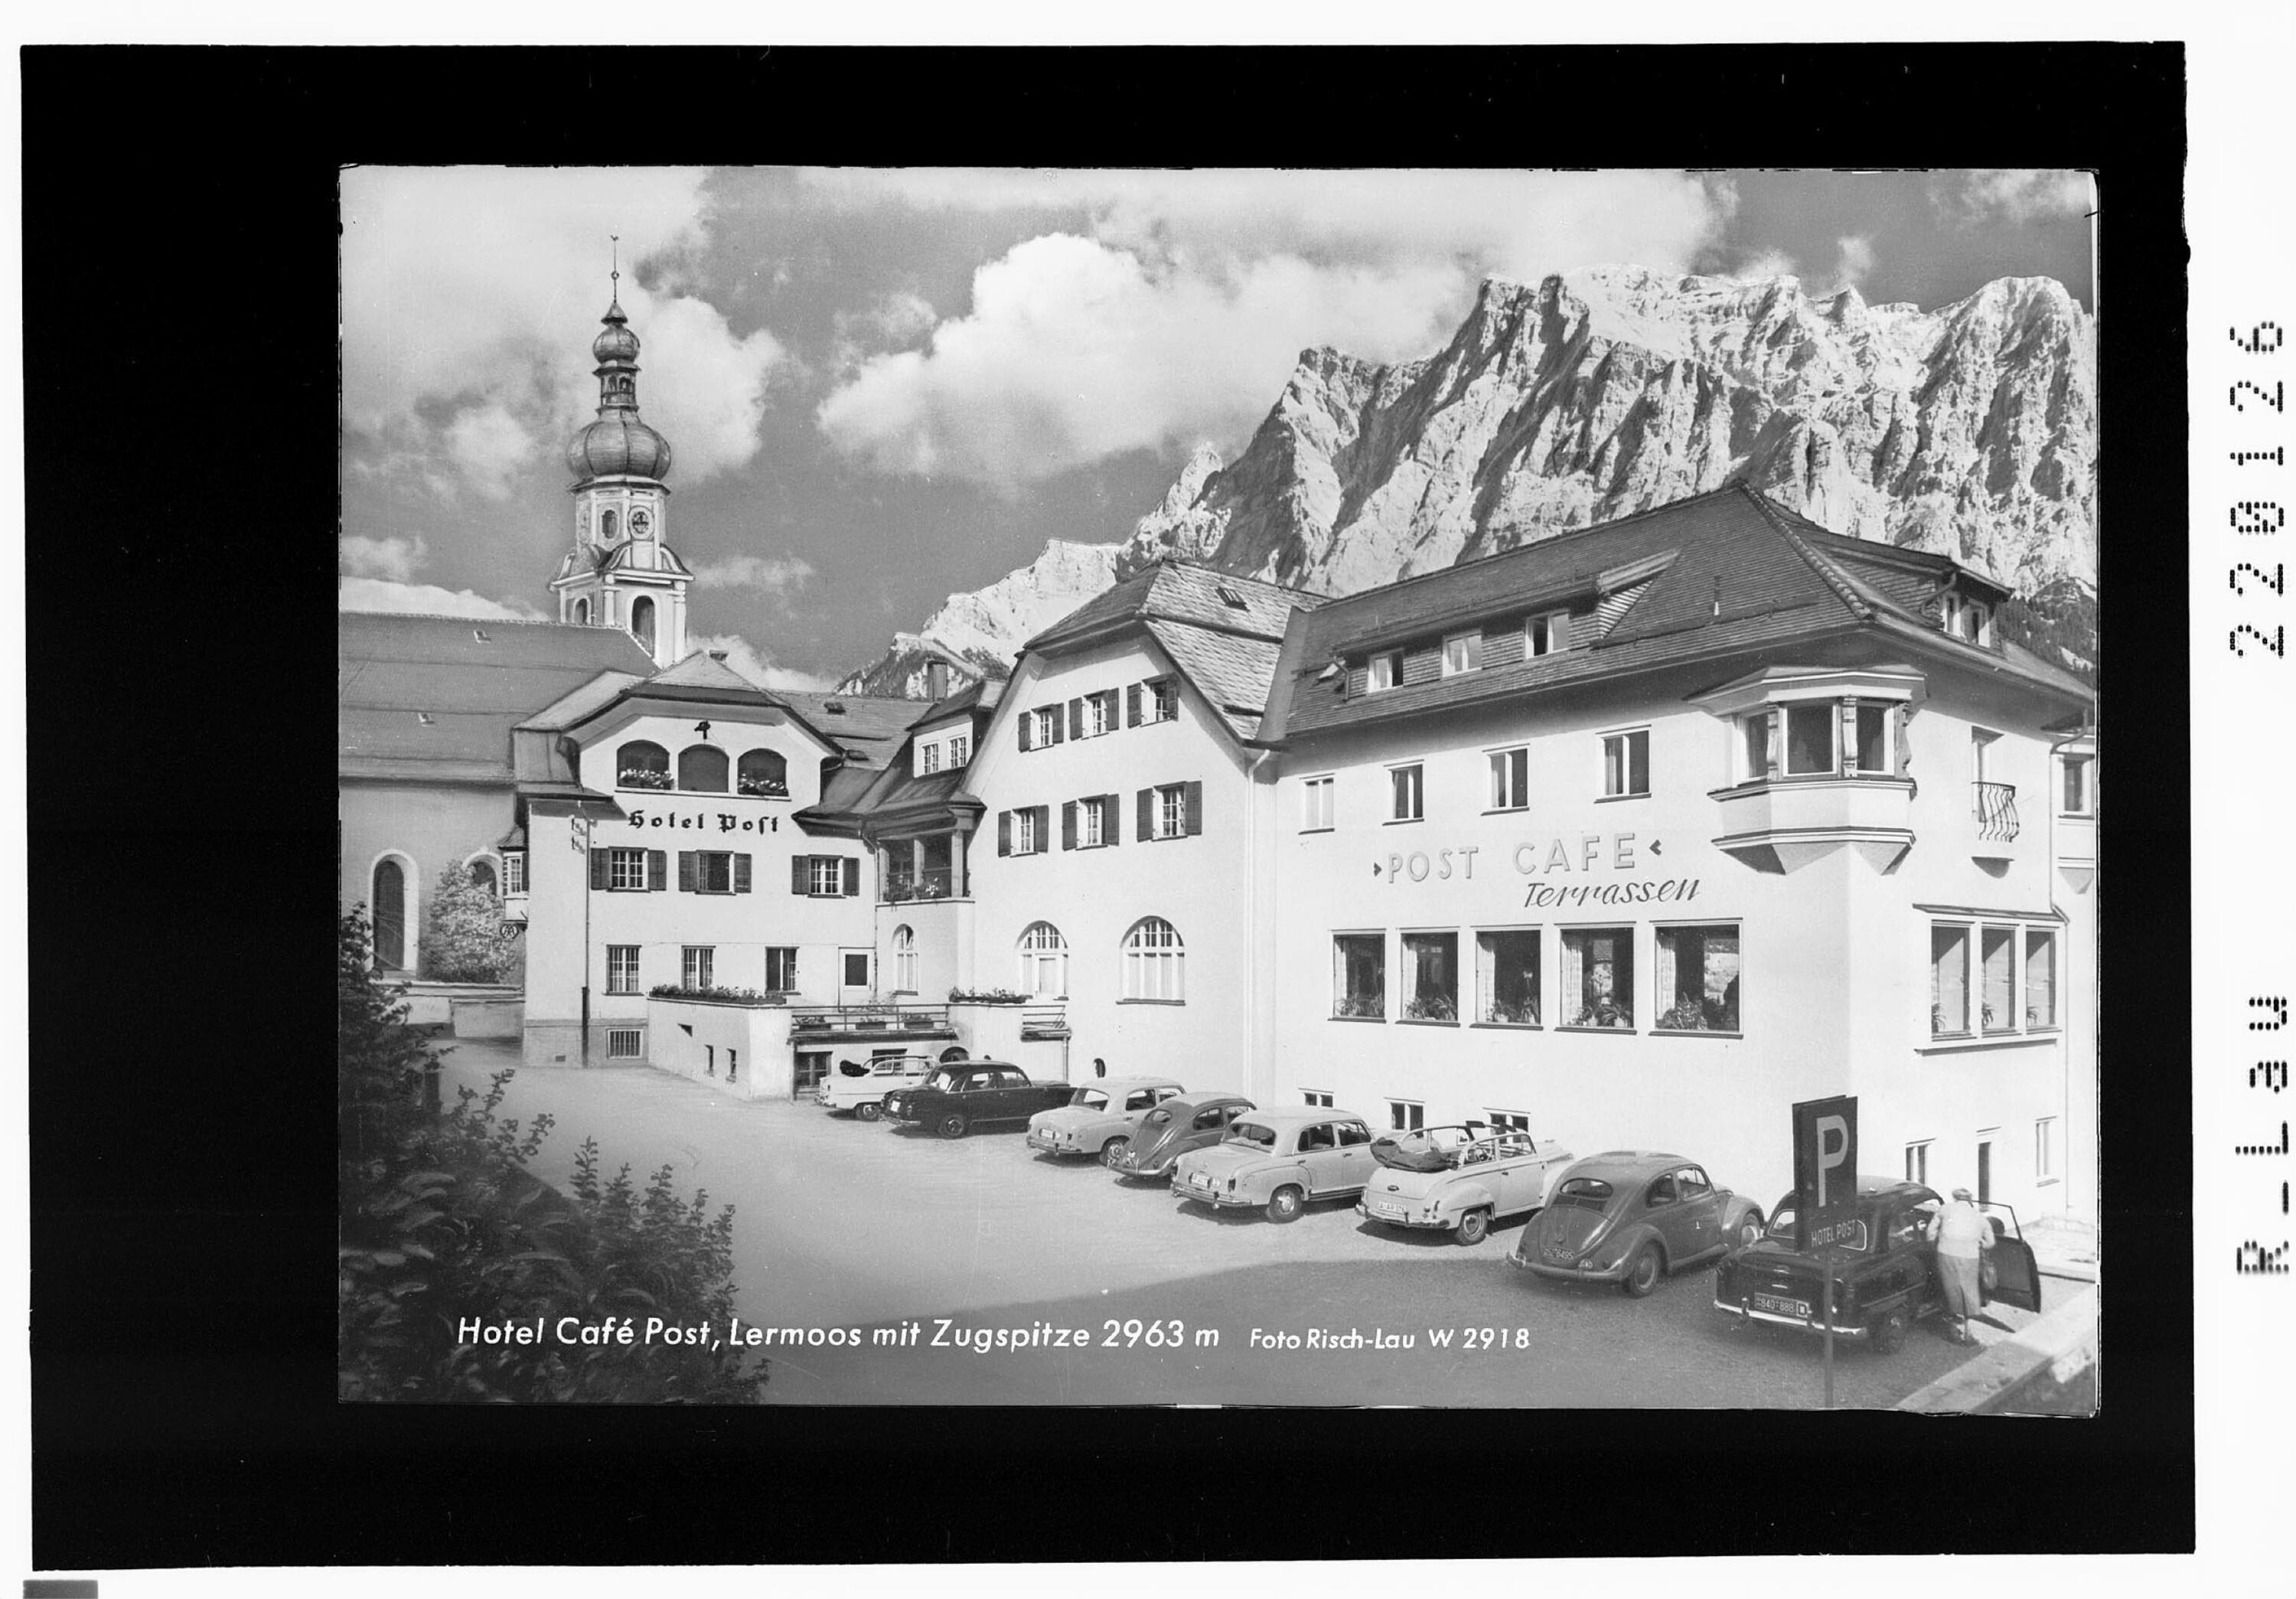 Hotel Cafe Post in Lermoos mit Zugspitze 2963 m></div>


    <hr>
    <div class=